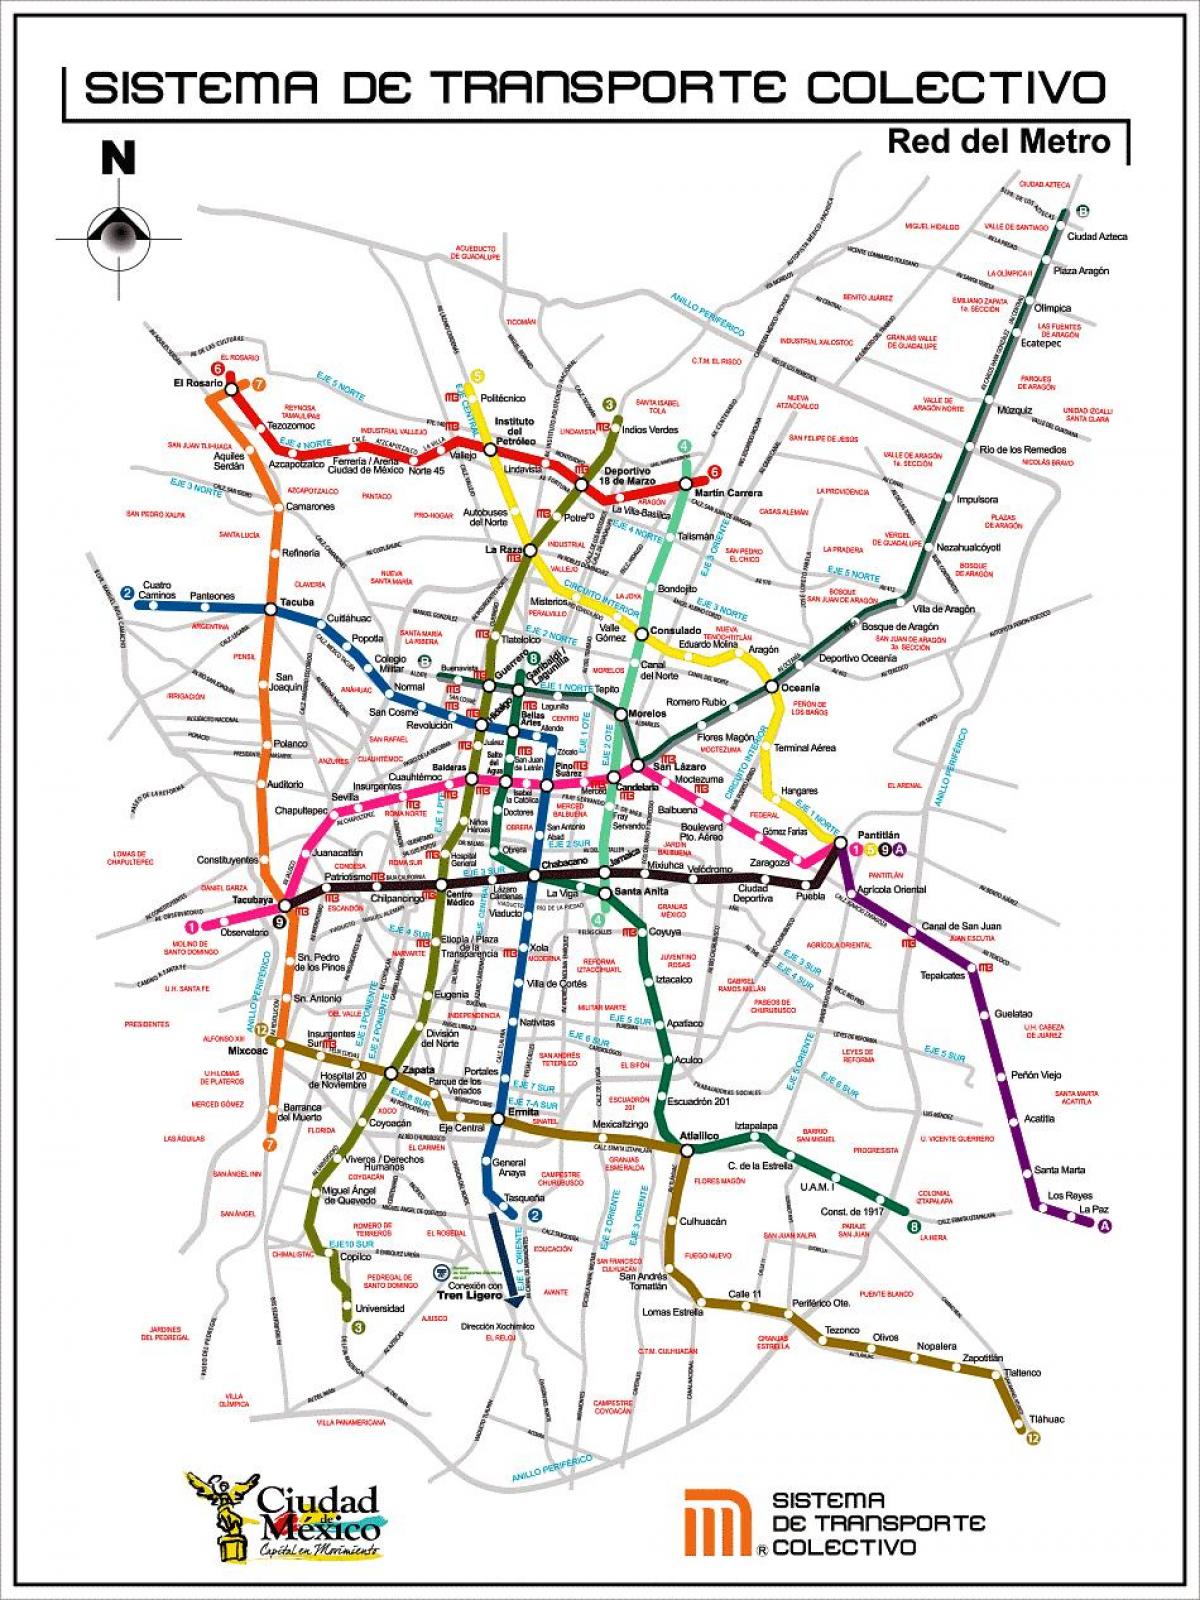 térkép Mexico City transit